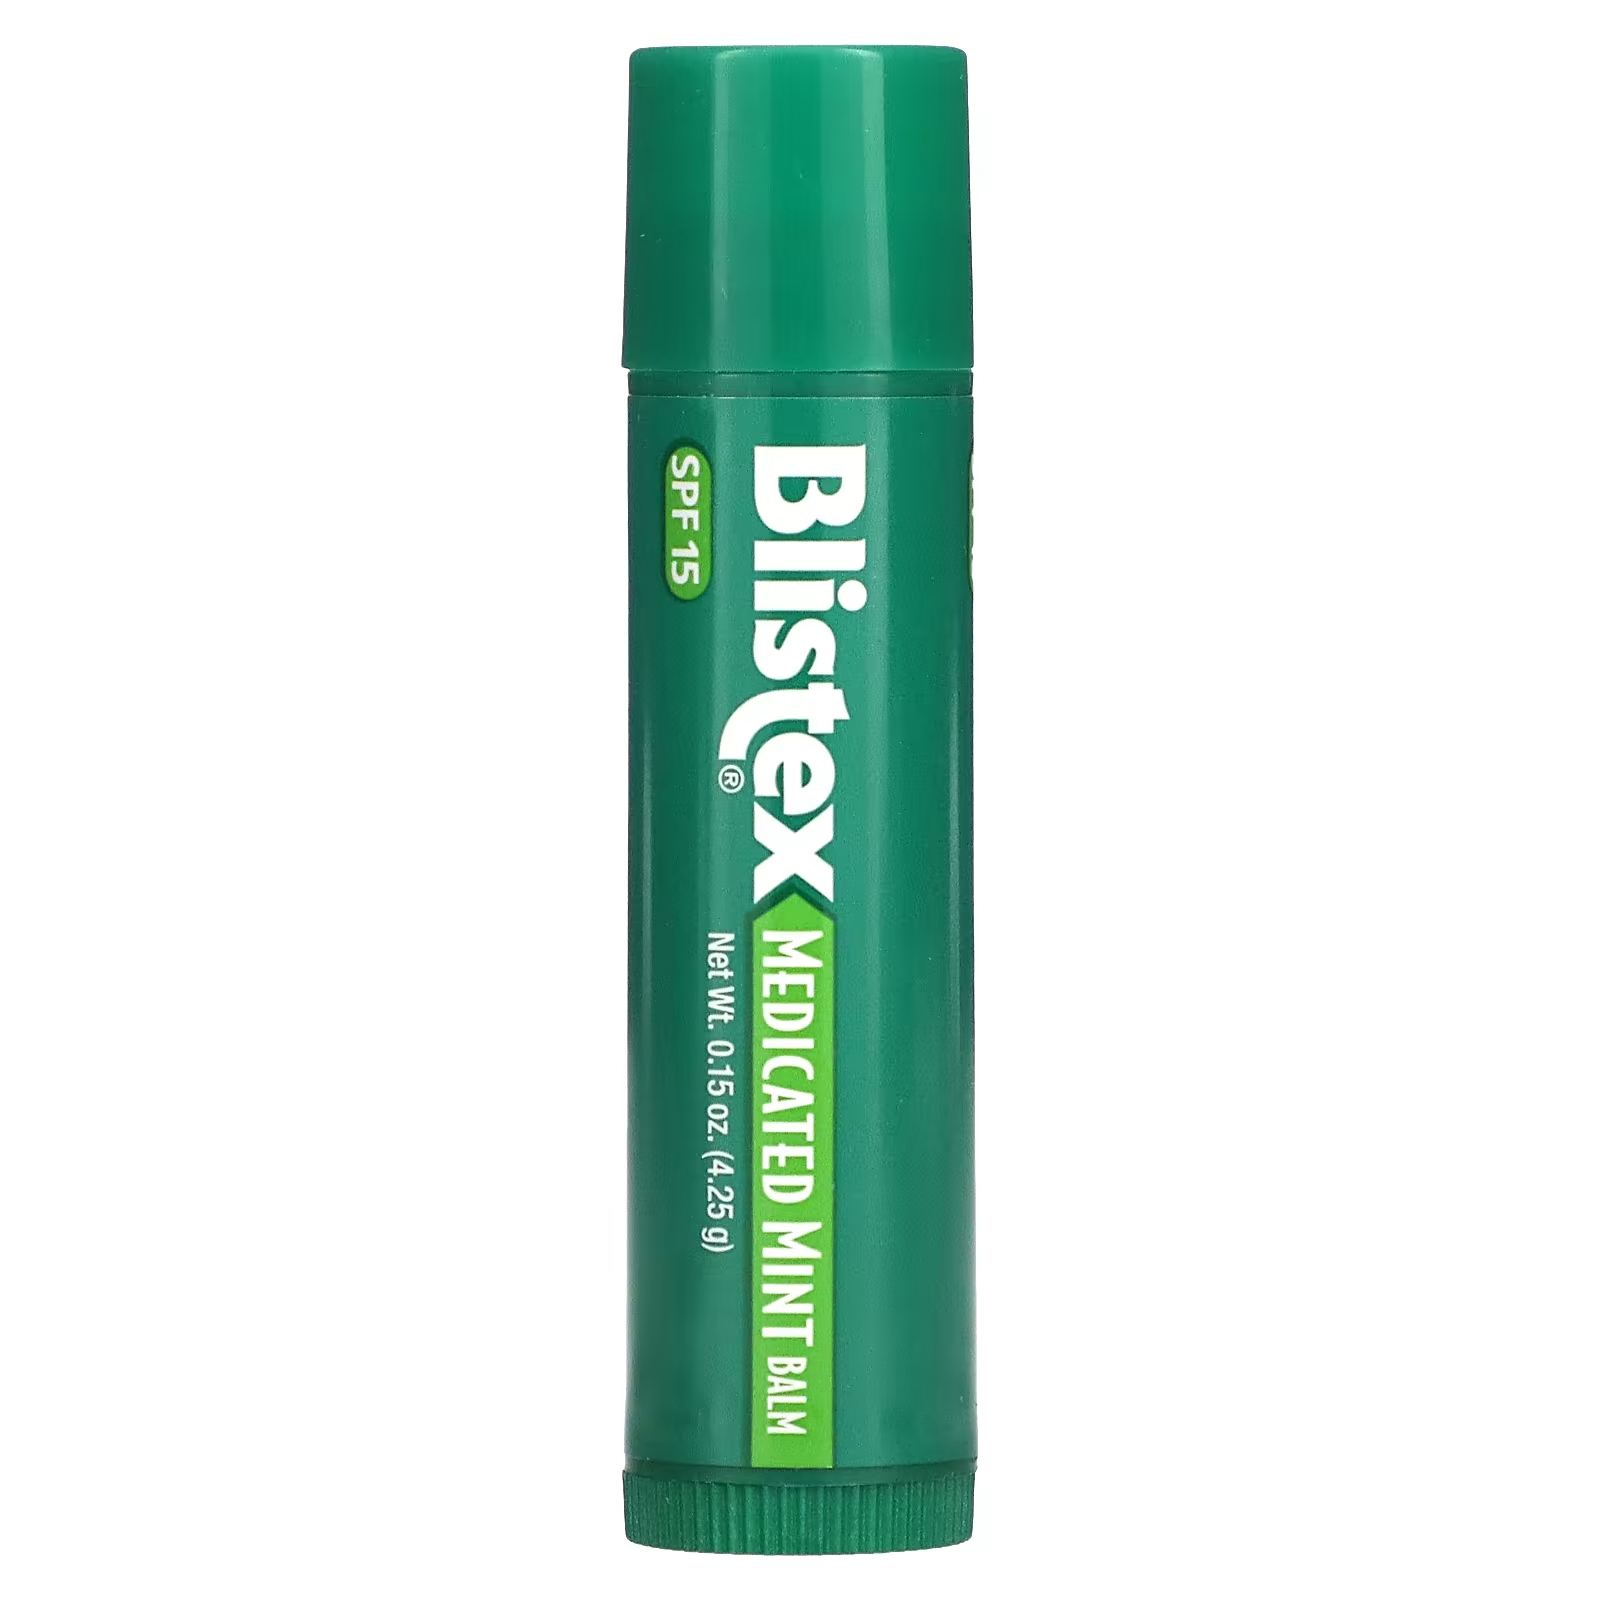 Blistex Лекарственное средство для защиты губ/солнцезащитное средство SPF 15, мятное, 0,15 унции (4,25 г) blistex dct увлажняющее средство для губ 7 08 г 0 25 унции